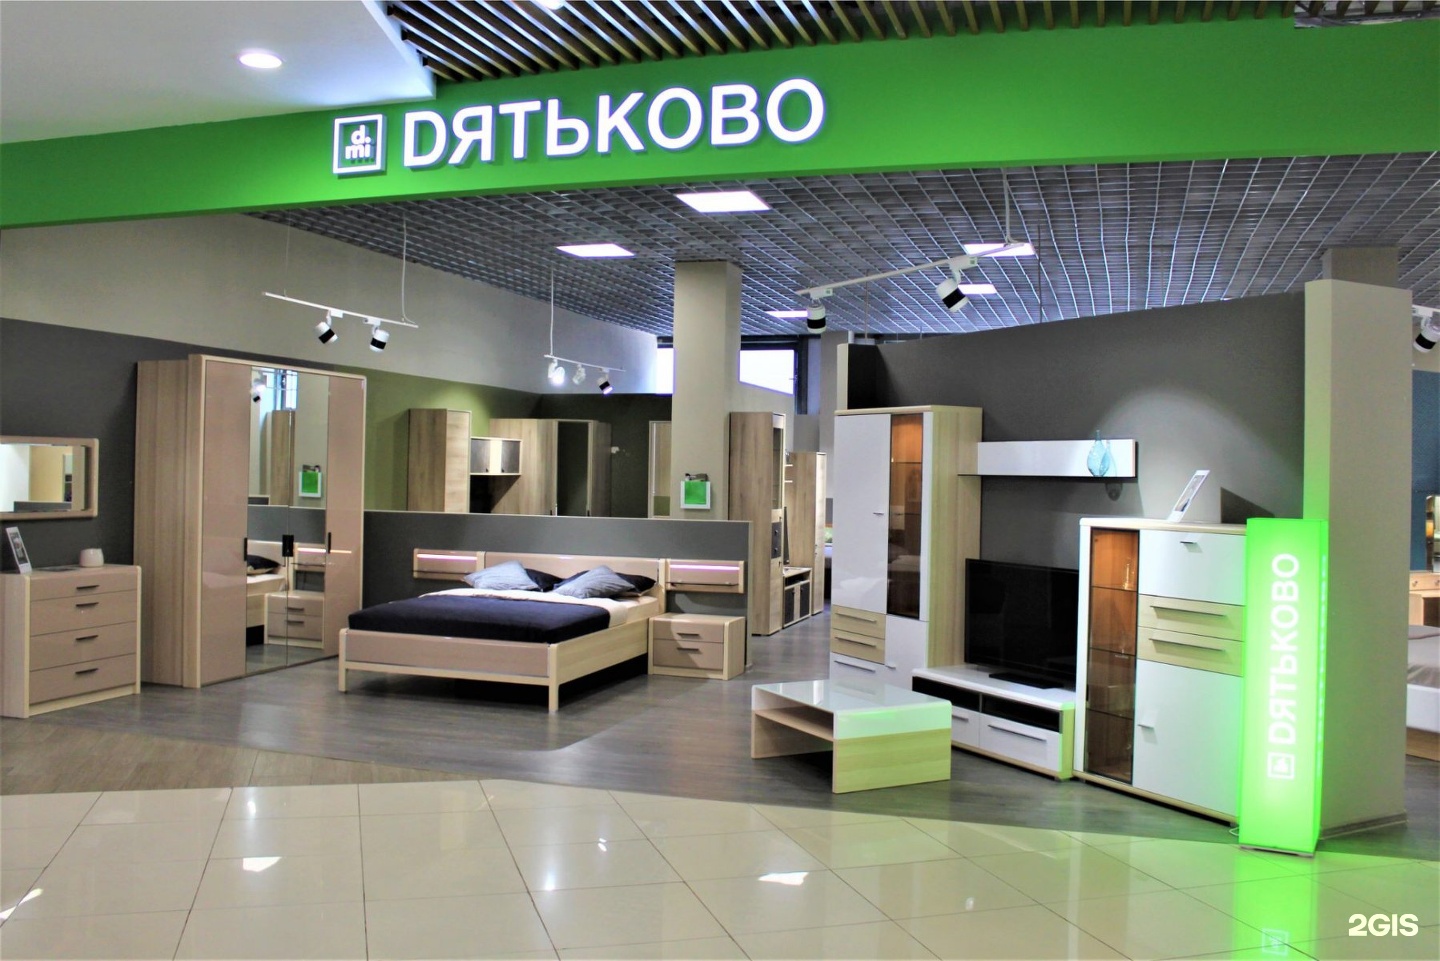 мебель дятьково в казахстане